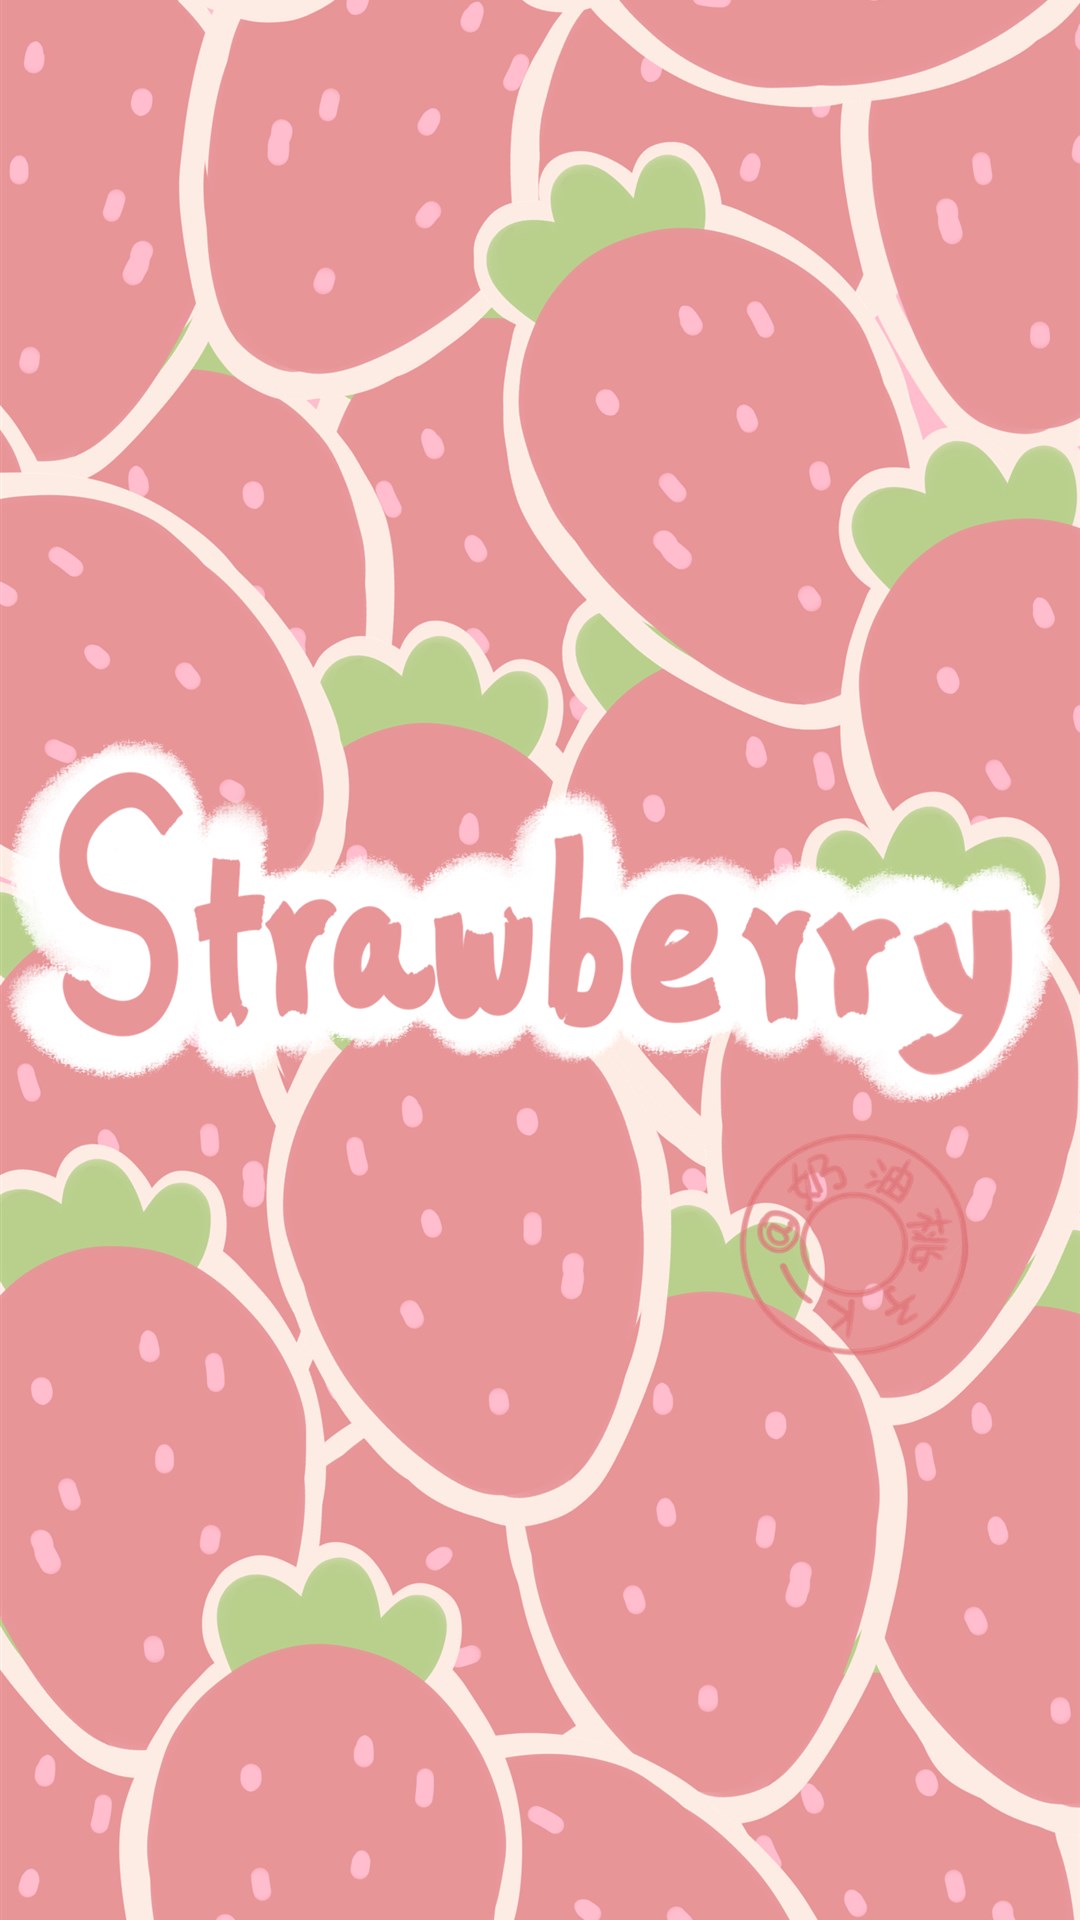 少女心草莓图案平铺壁纸,浪漫的粉红色,无法抵挡的甜美